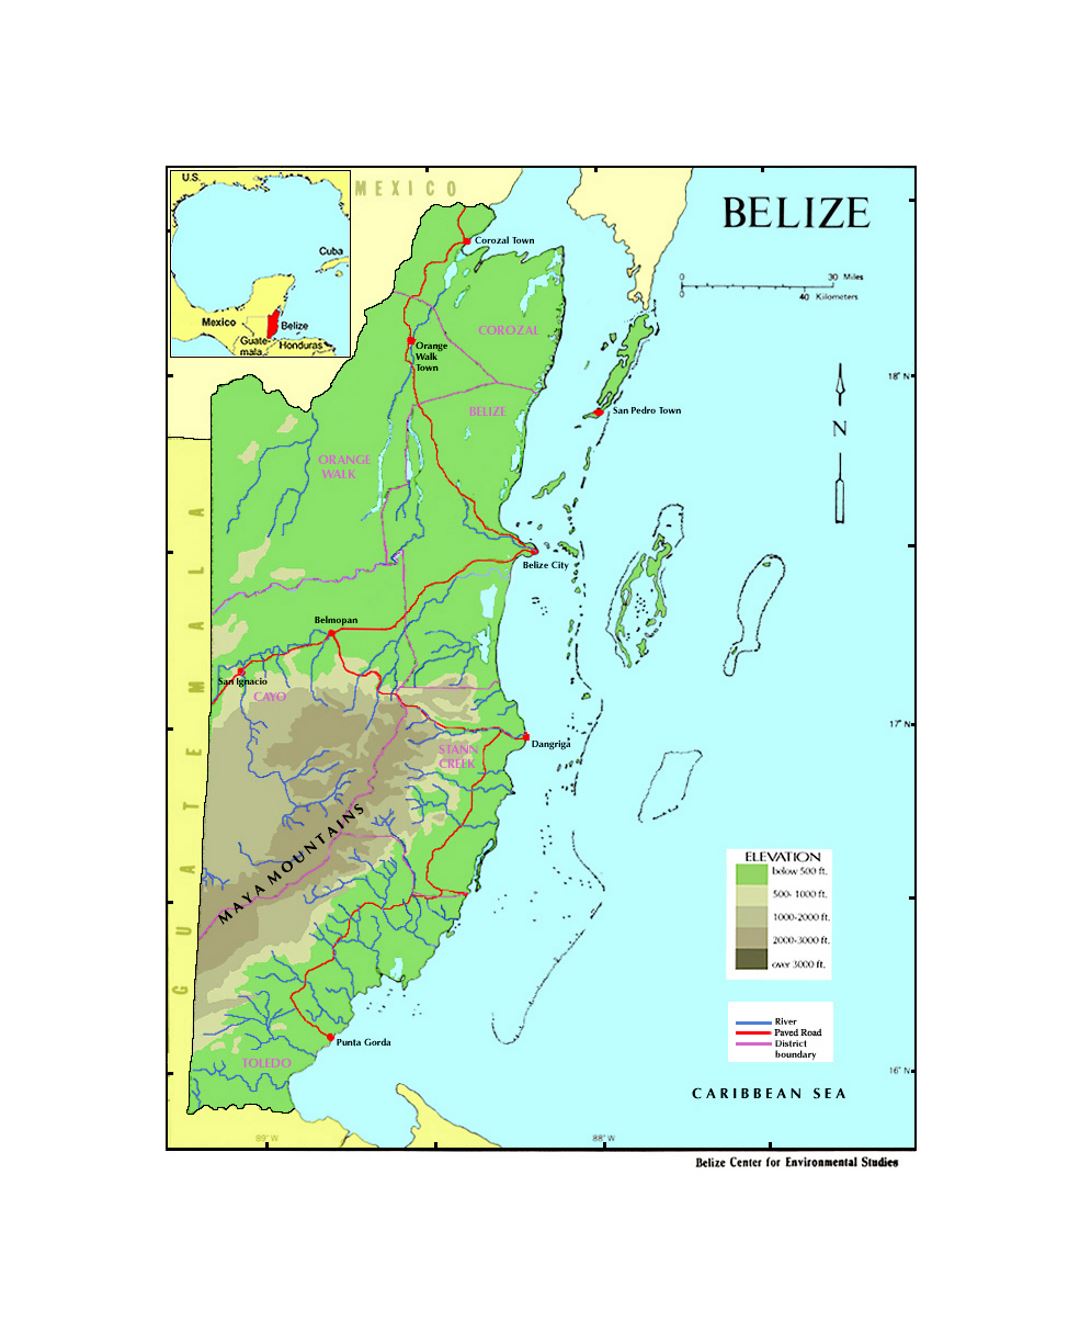 Elevation map of Belize